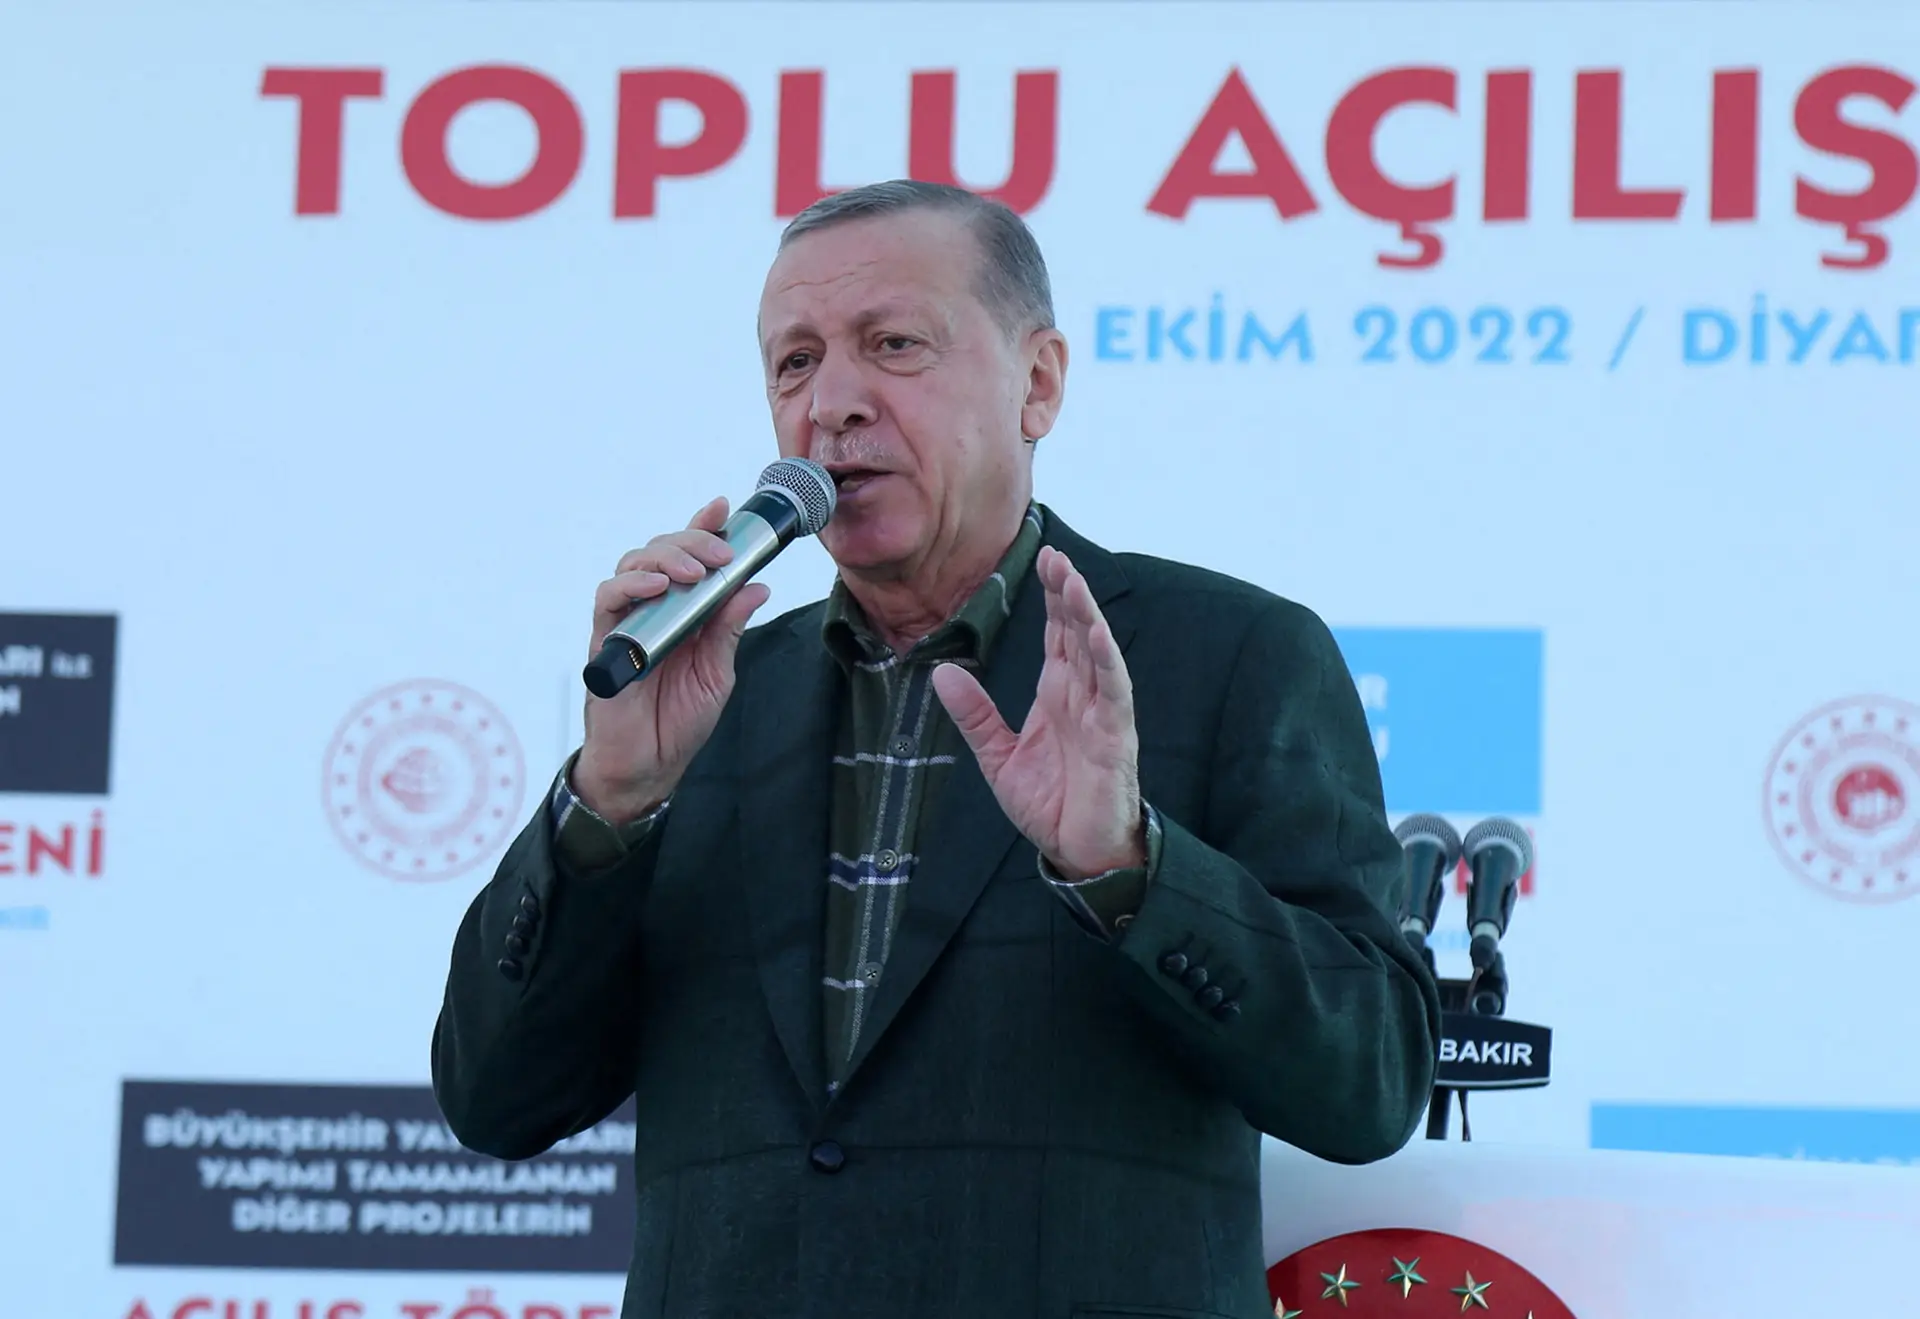 Turquia pede à Suécia que impeça o PKK de tornar "reféns" as relações bilaterais